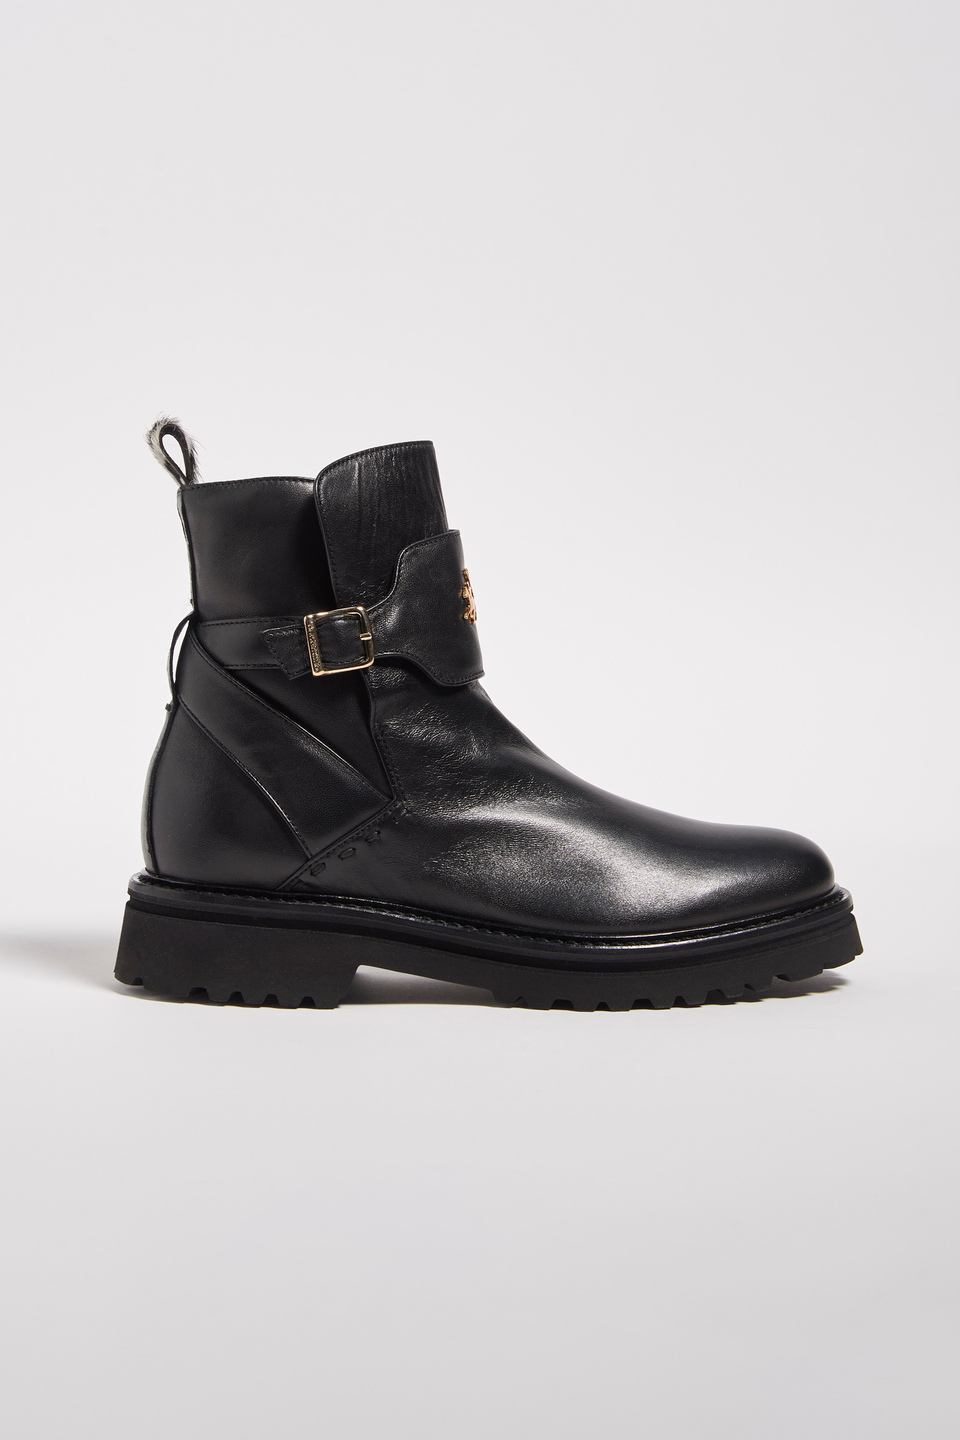 Brushed leather desert boots - La Martina - Official Online Shop